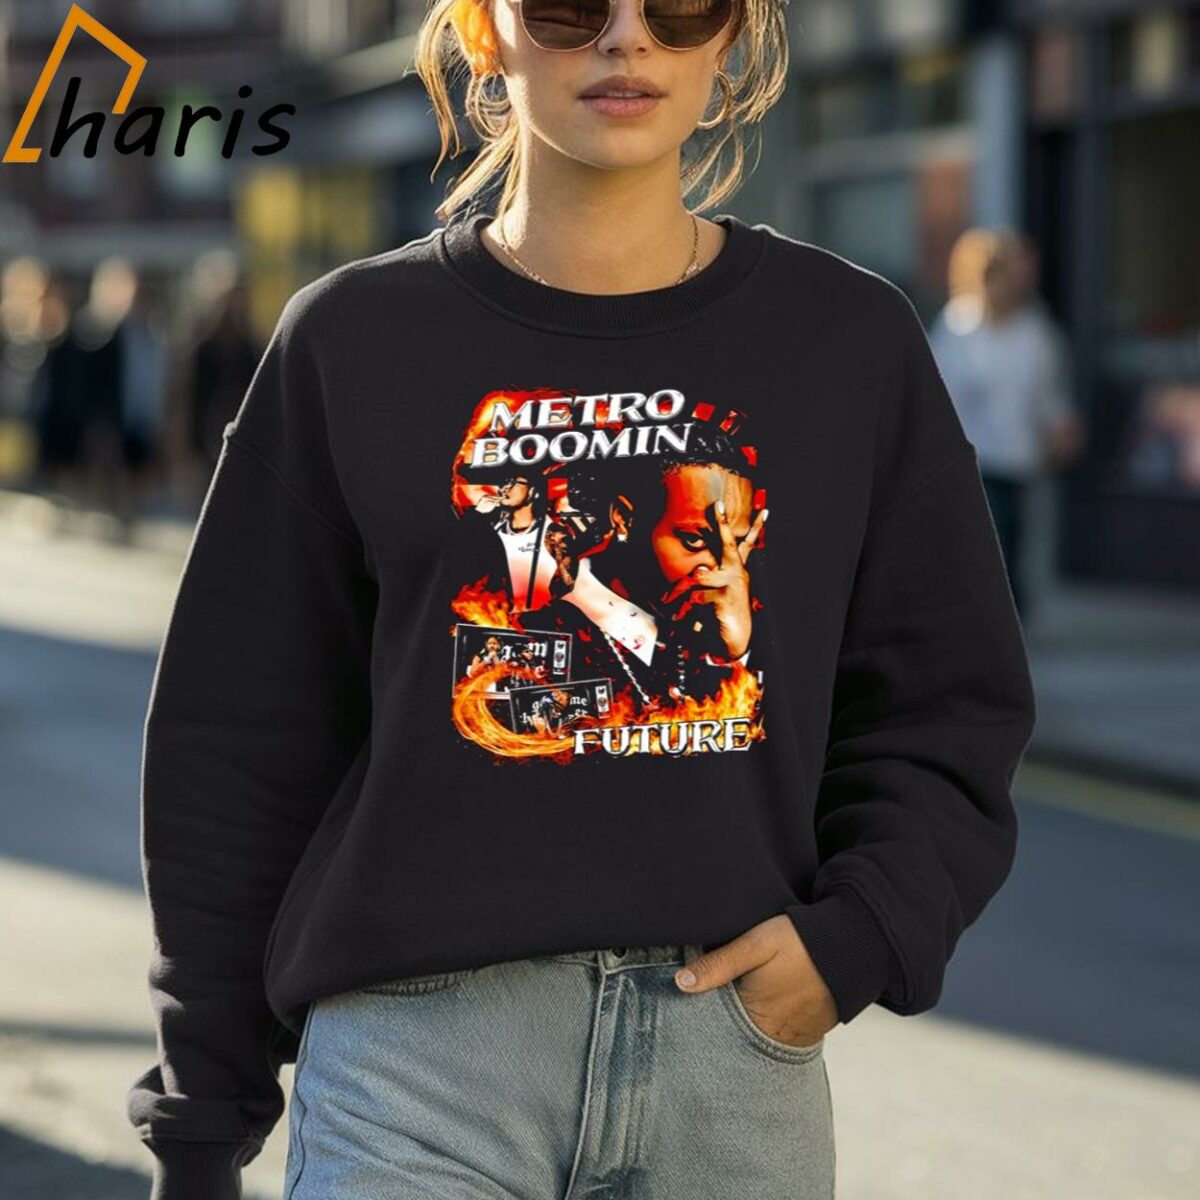 Metro Boomin x Future Graphic Shirt 4 Sweatshirt